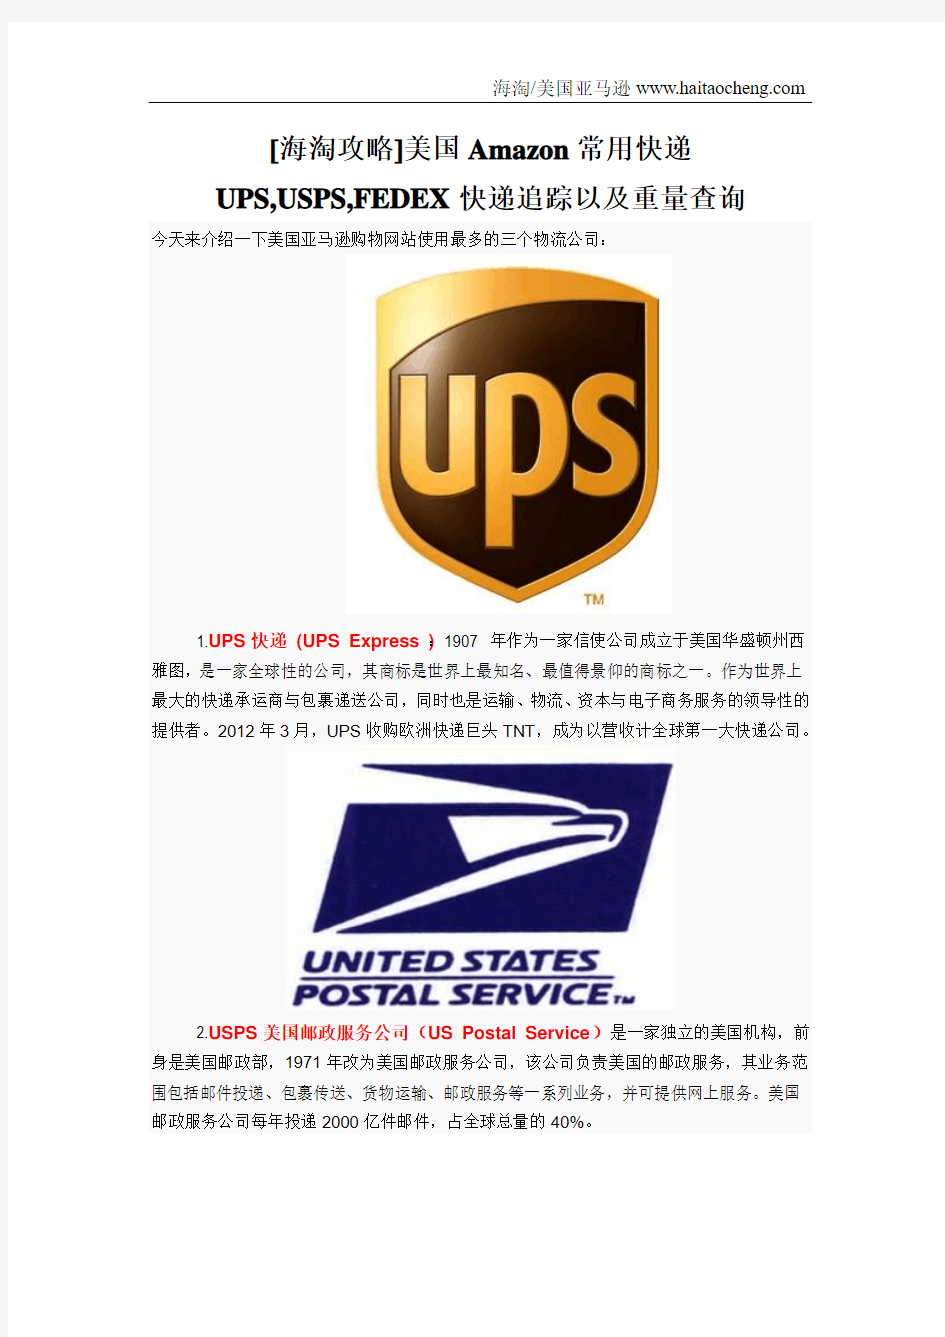 [海淘攻略]美国Amazon常用快递UPS,USPS,FEDEX快递追踪以及重量查询